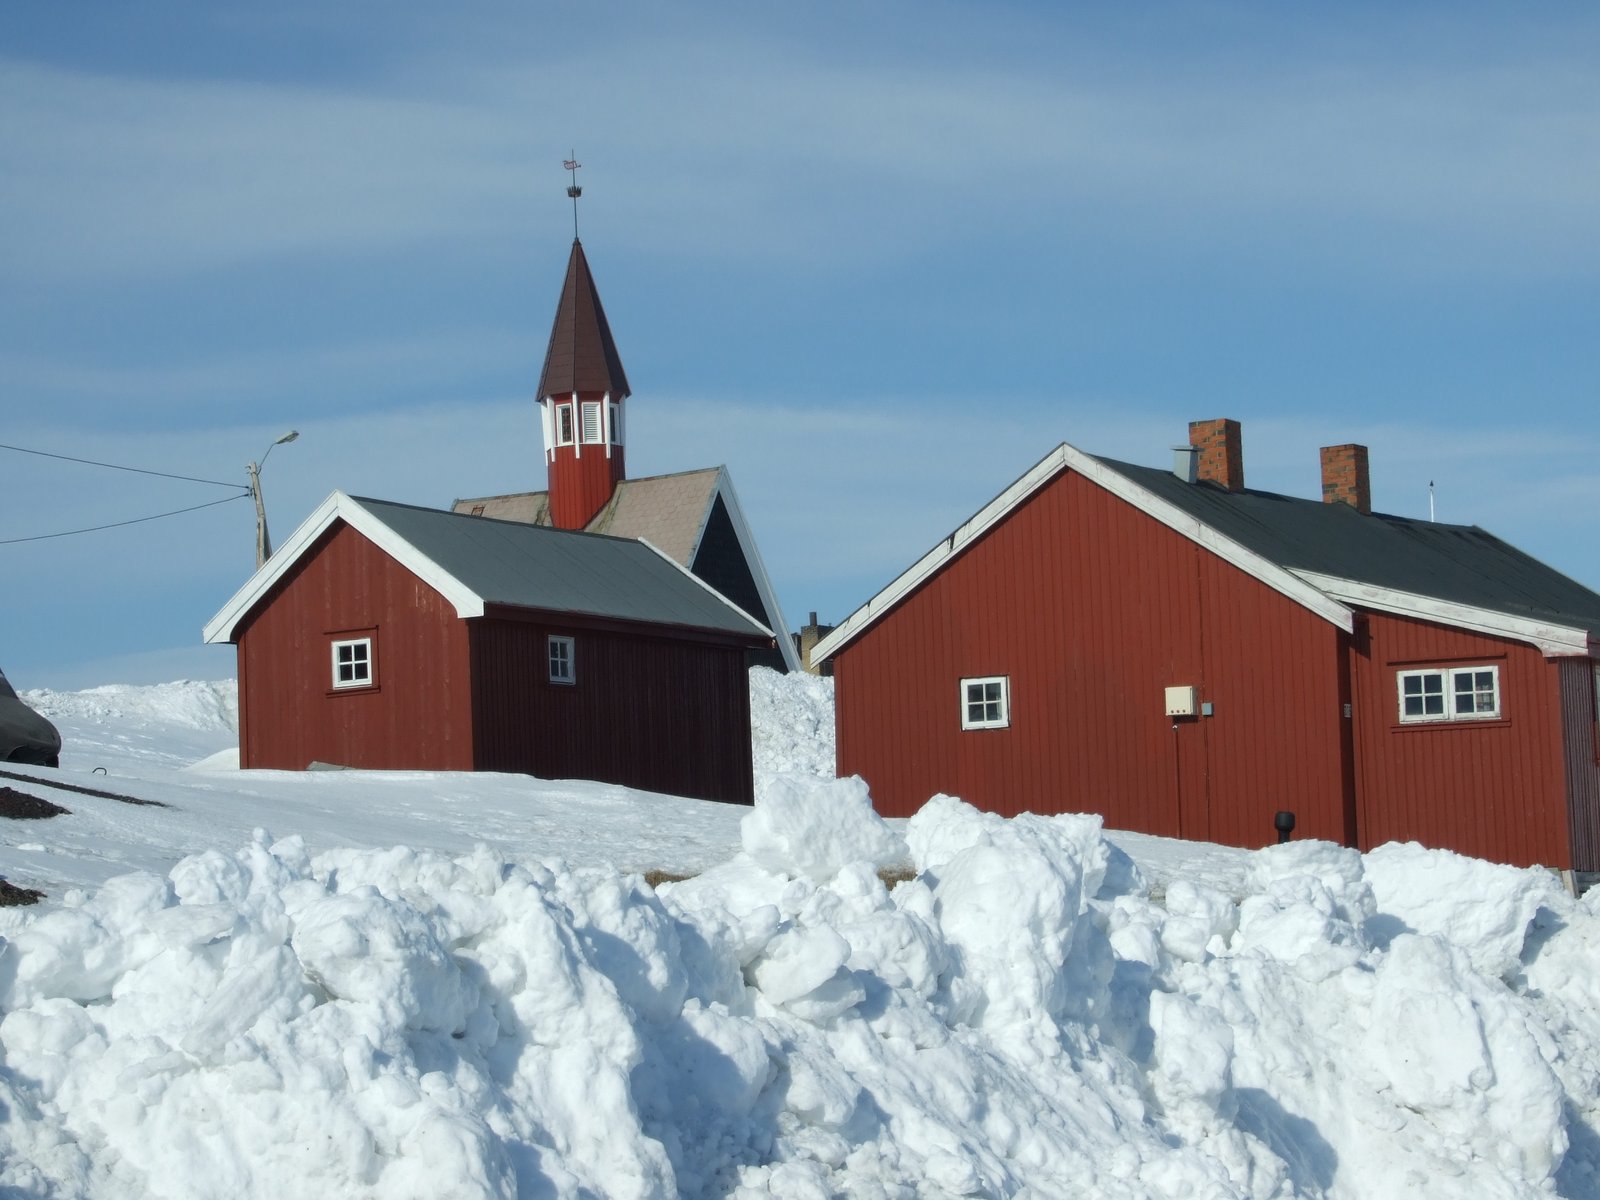 NORUEGA: Un bello país de Escandinavia que hay que visitar